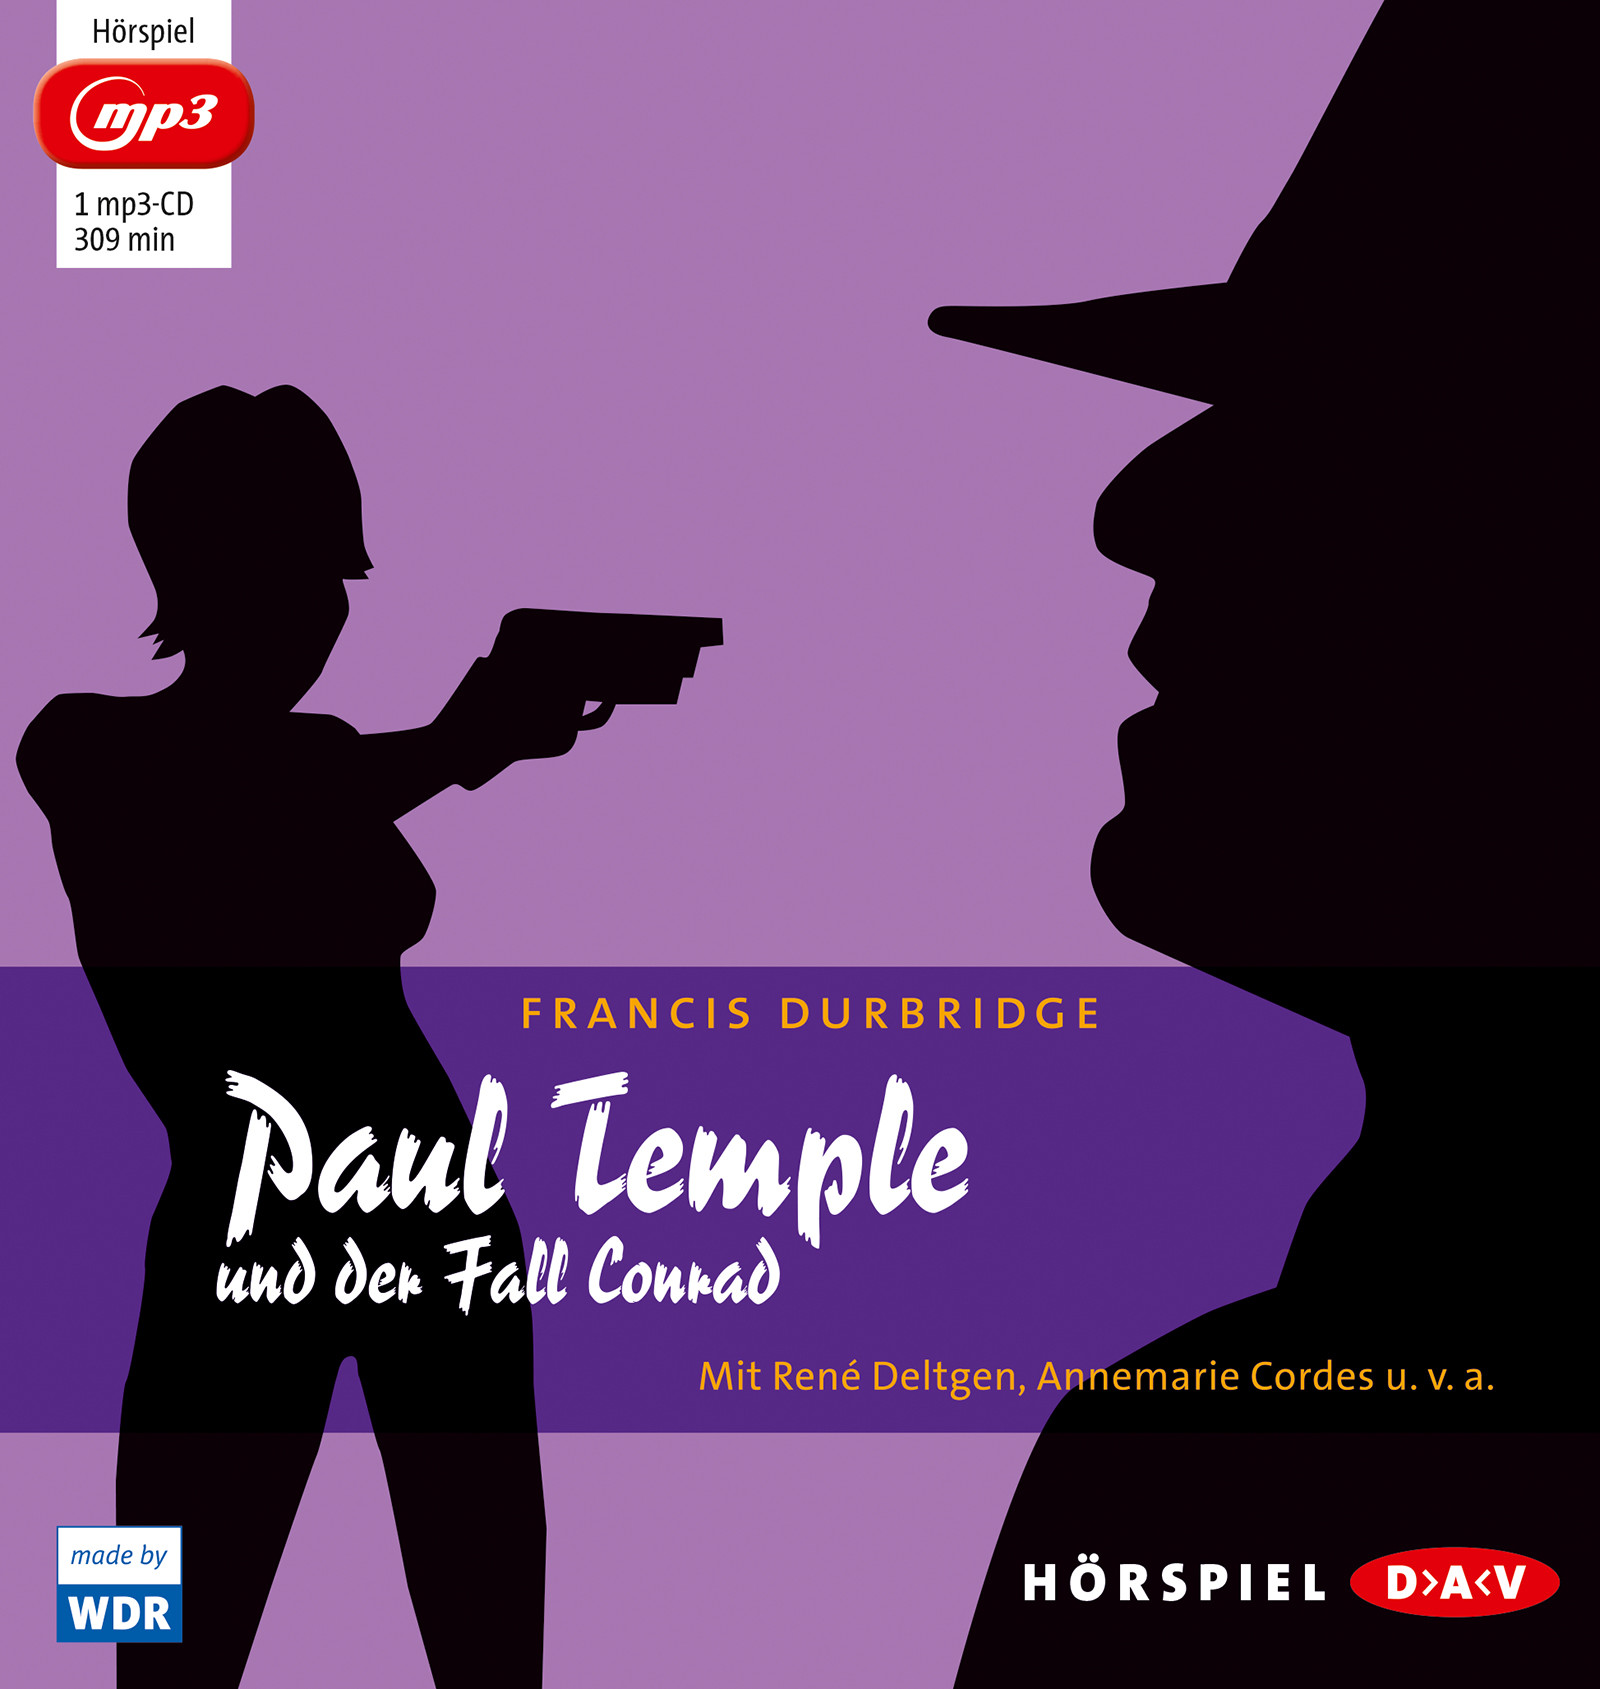 Francis Durbridge - Paul Temple und der Fall Conrad (mp3-Ausgabe)